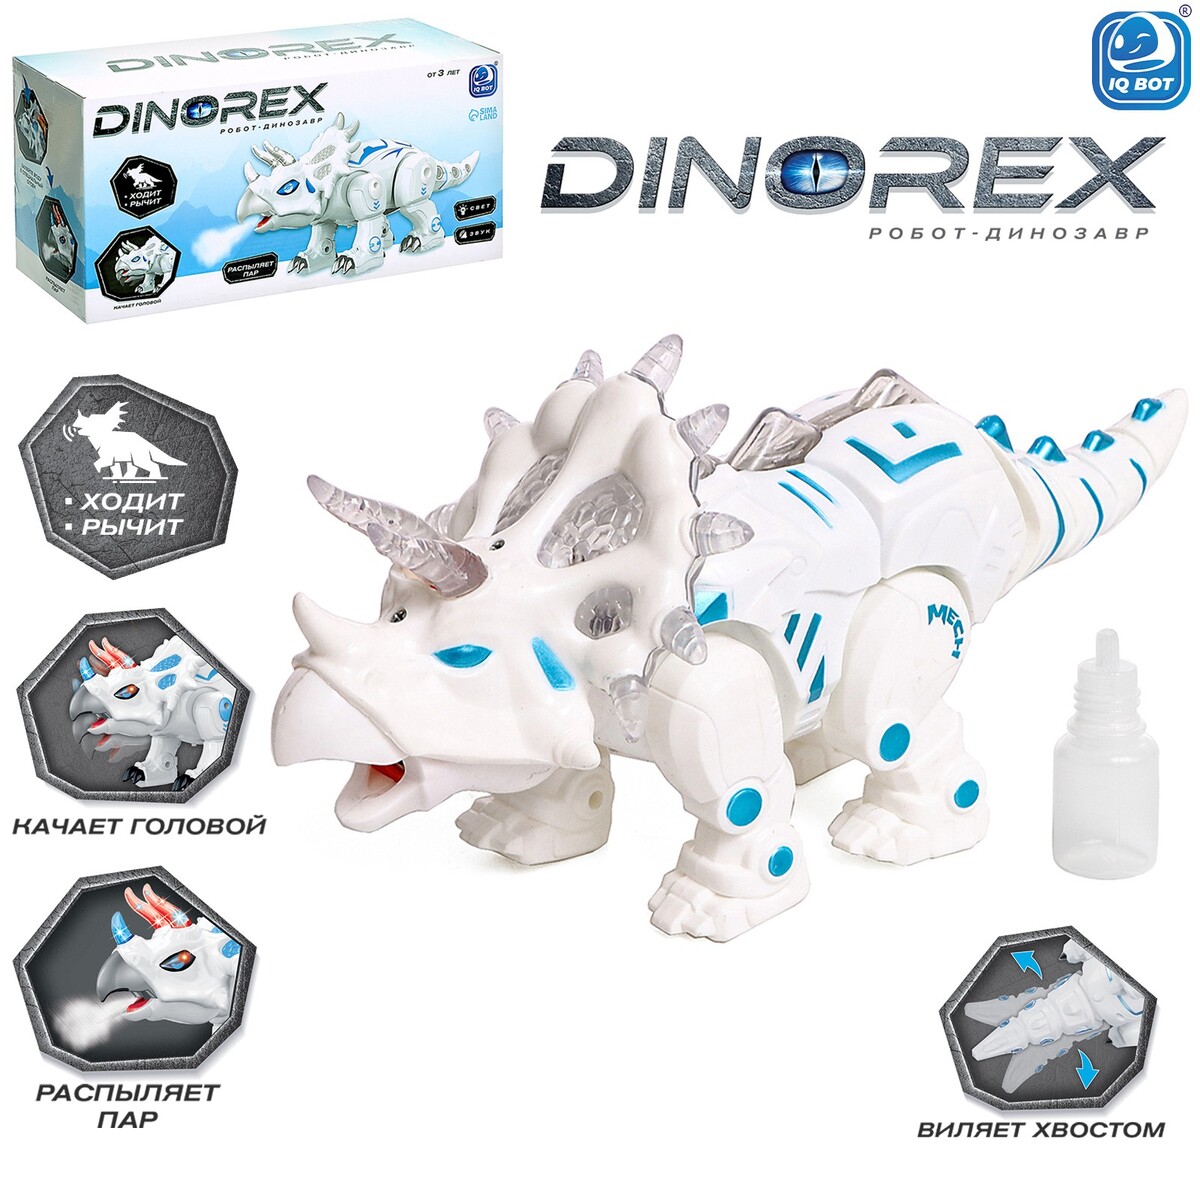 Робот динозавр dinorex iq bot, интерактивный: световые и звуковые эффекты, на батарейках интерактивный радиоуправляемый робот динозавр zhorya тирекс дышит паром 109463